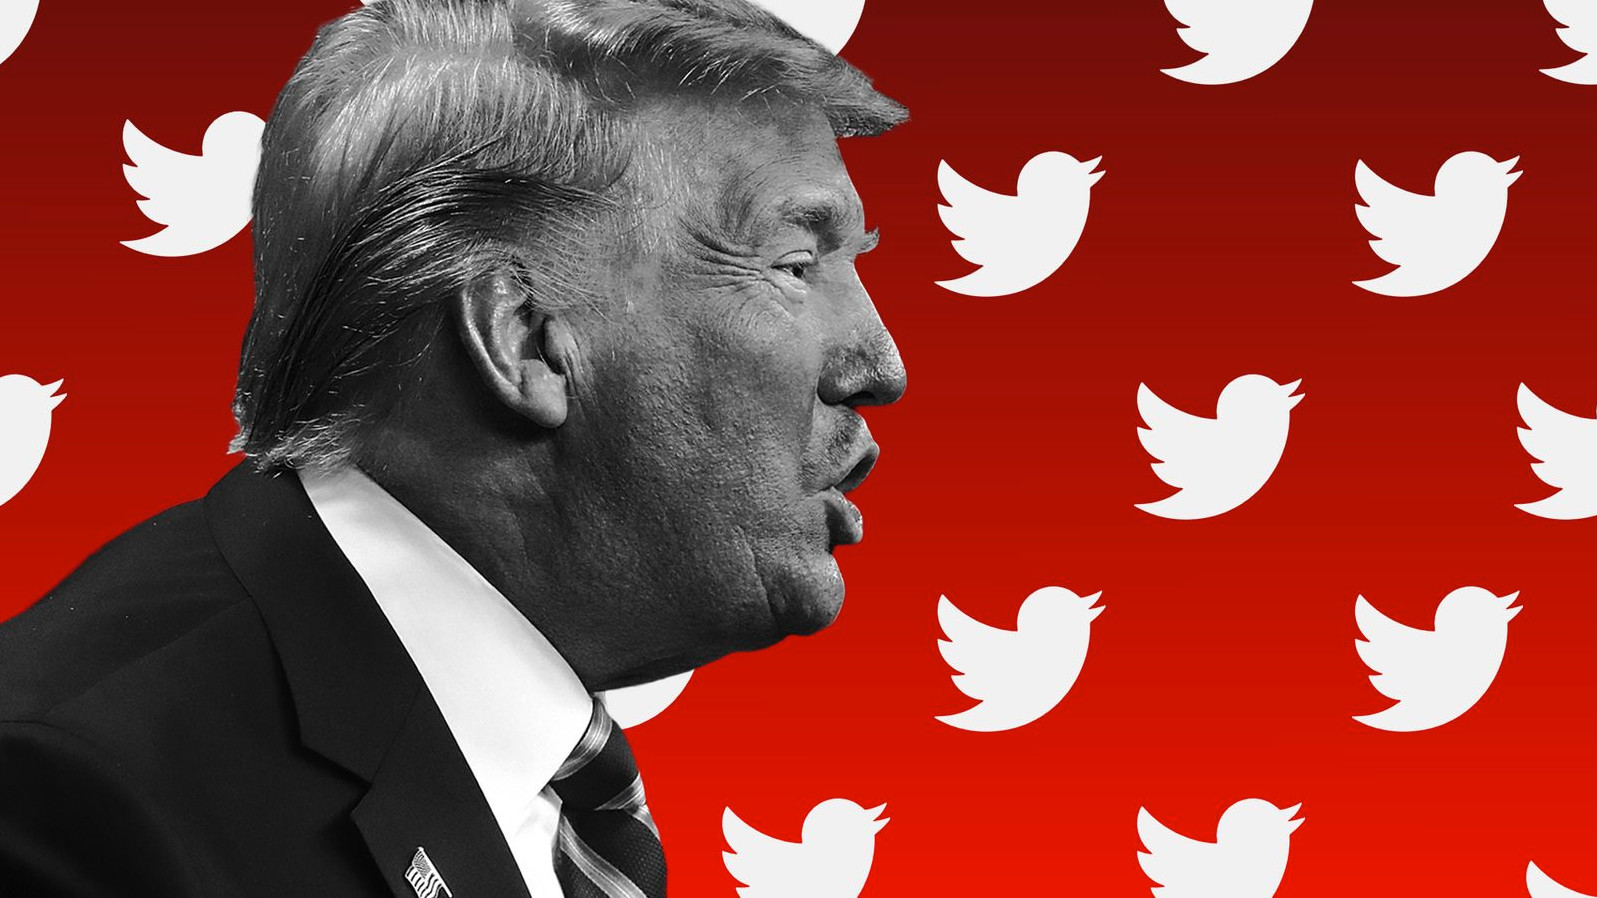 Πέθανε ο Ντόλαντ Τραμπ; - Οι χρήστες του Twitter δοκιμάζουν το νέο αλγόριθμο του Έλον Μασκ για τις ψευδείς ειδήσεις